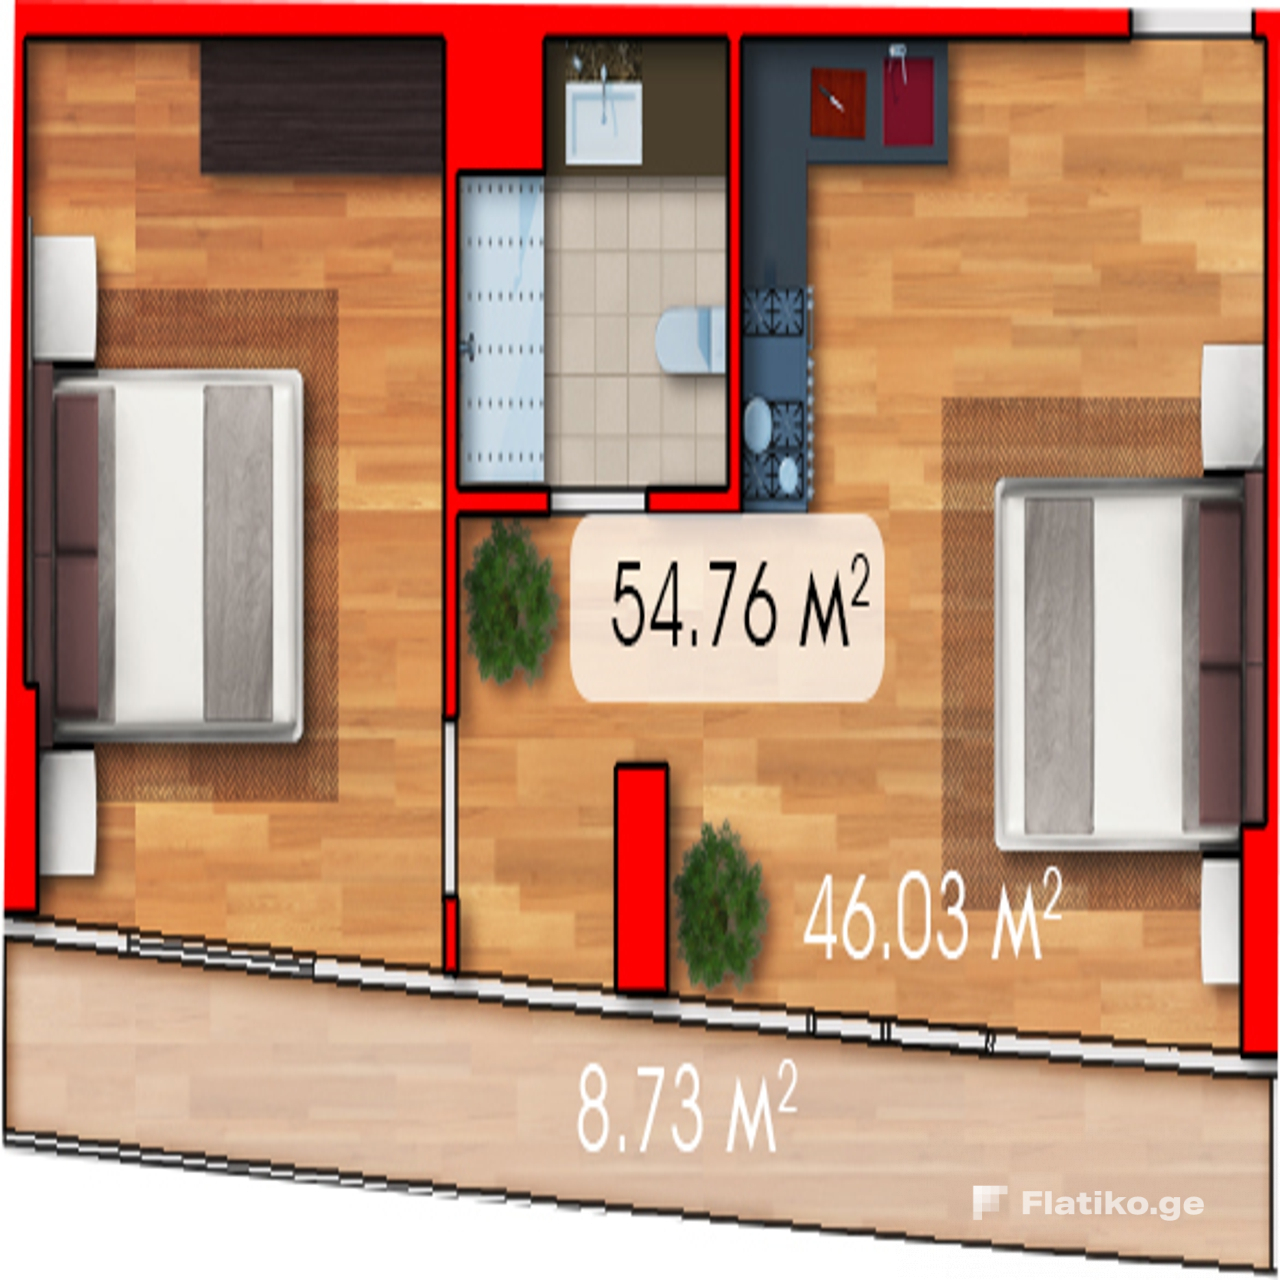 1-Bedroom Block B